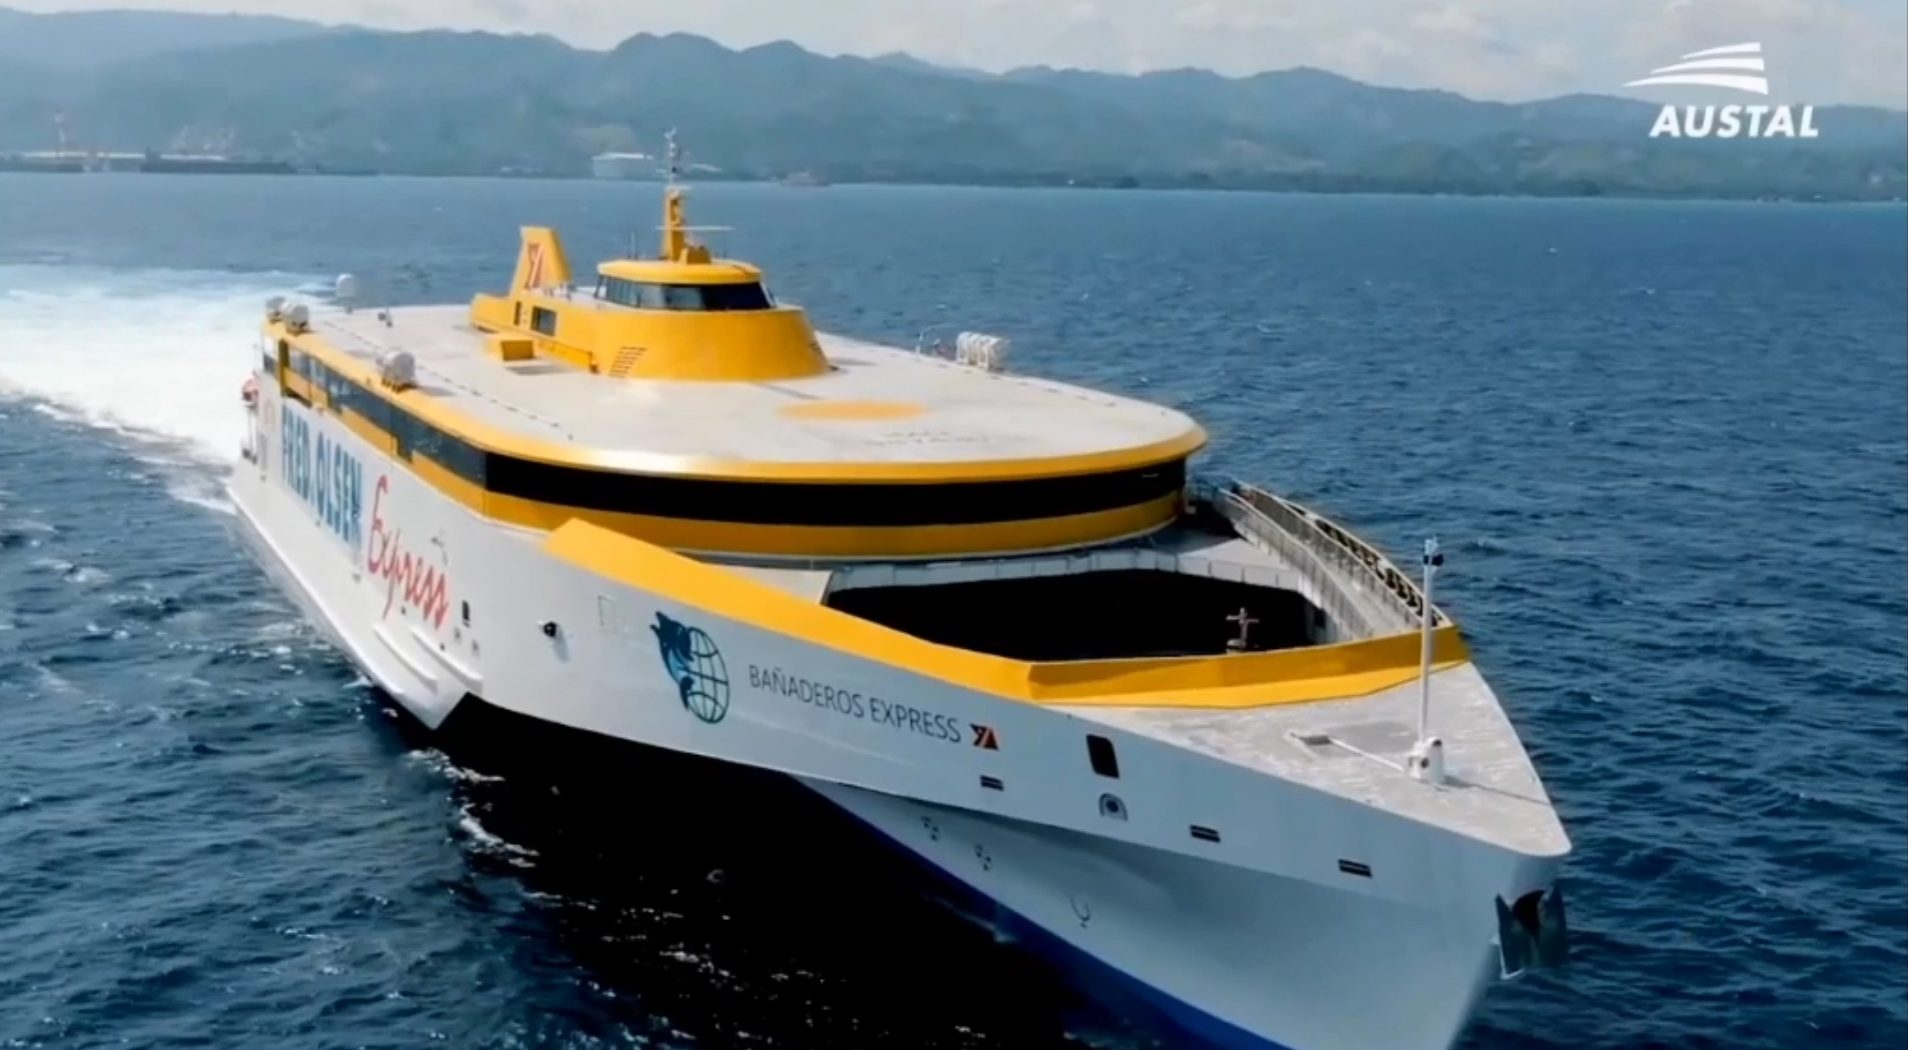 Canary Islands to receive Cebu-built ship